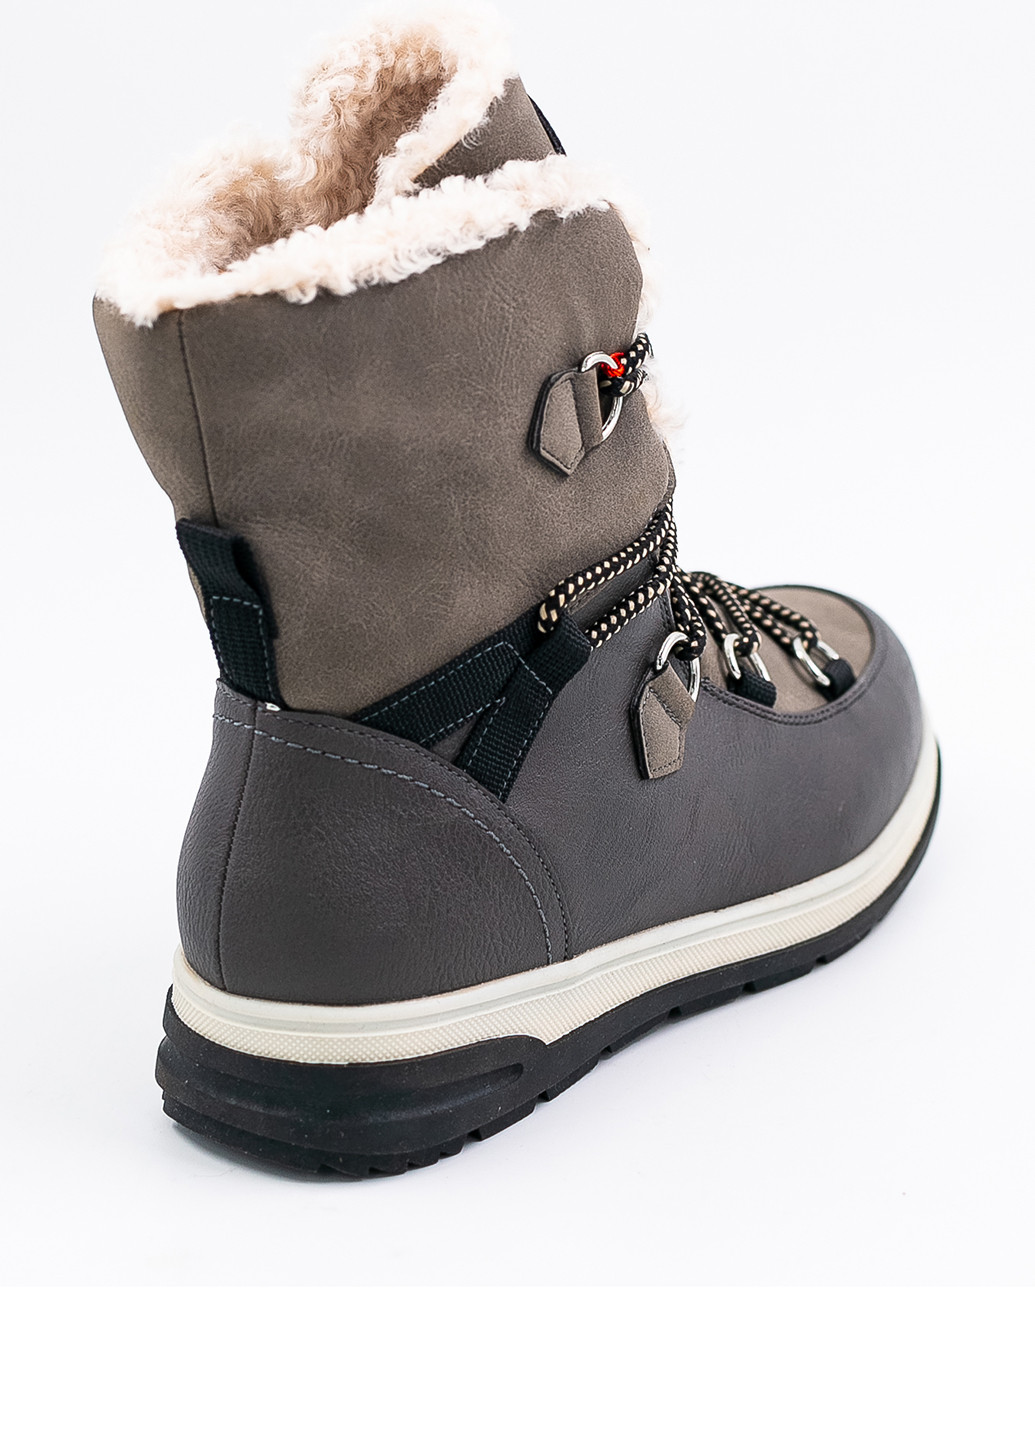 Зимние ботинки Kimberfeel без декора из искусственной кожи